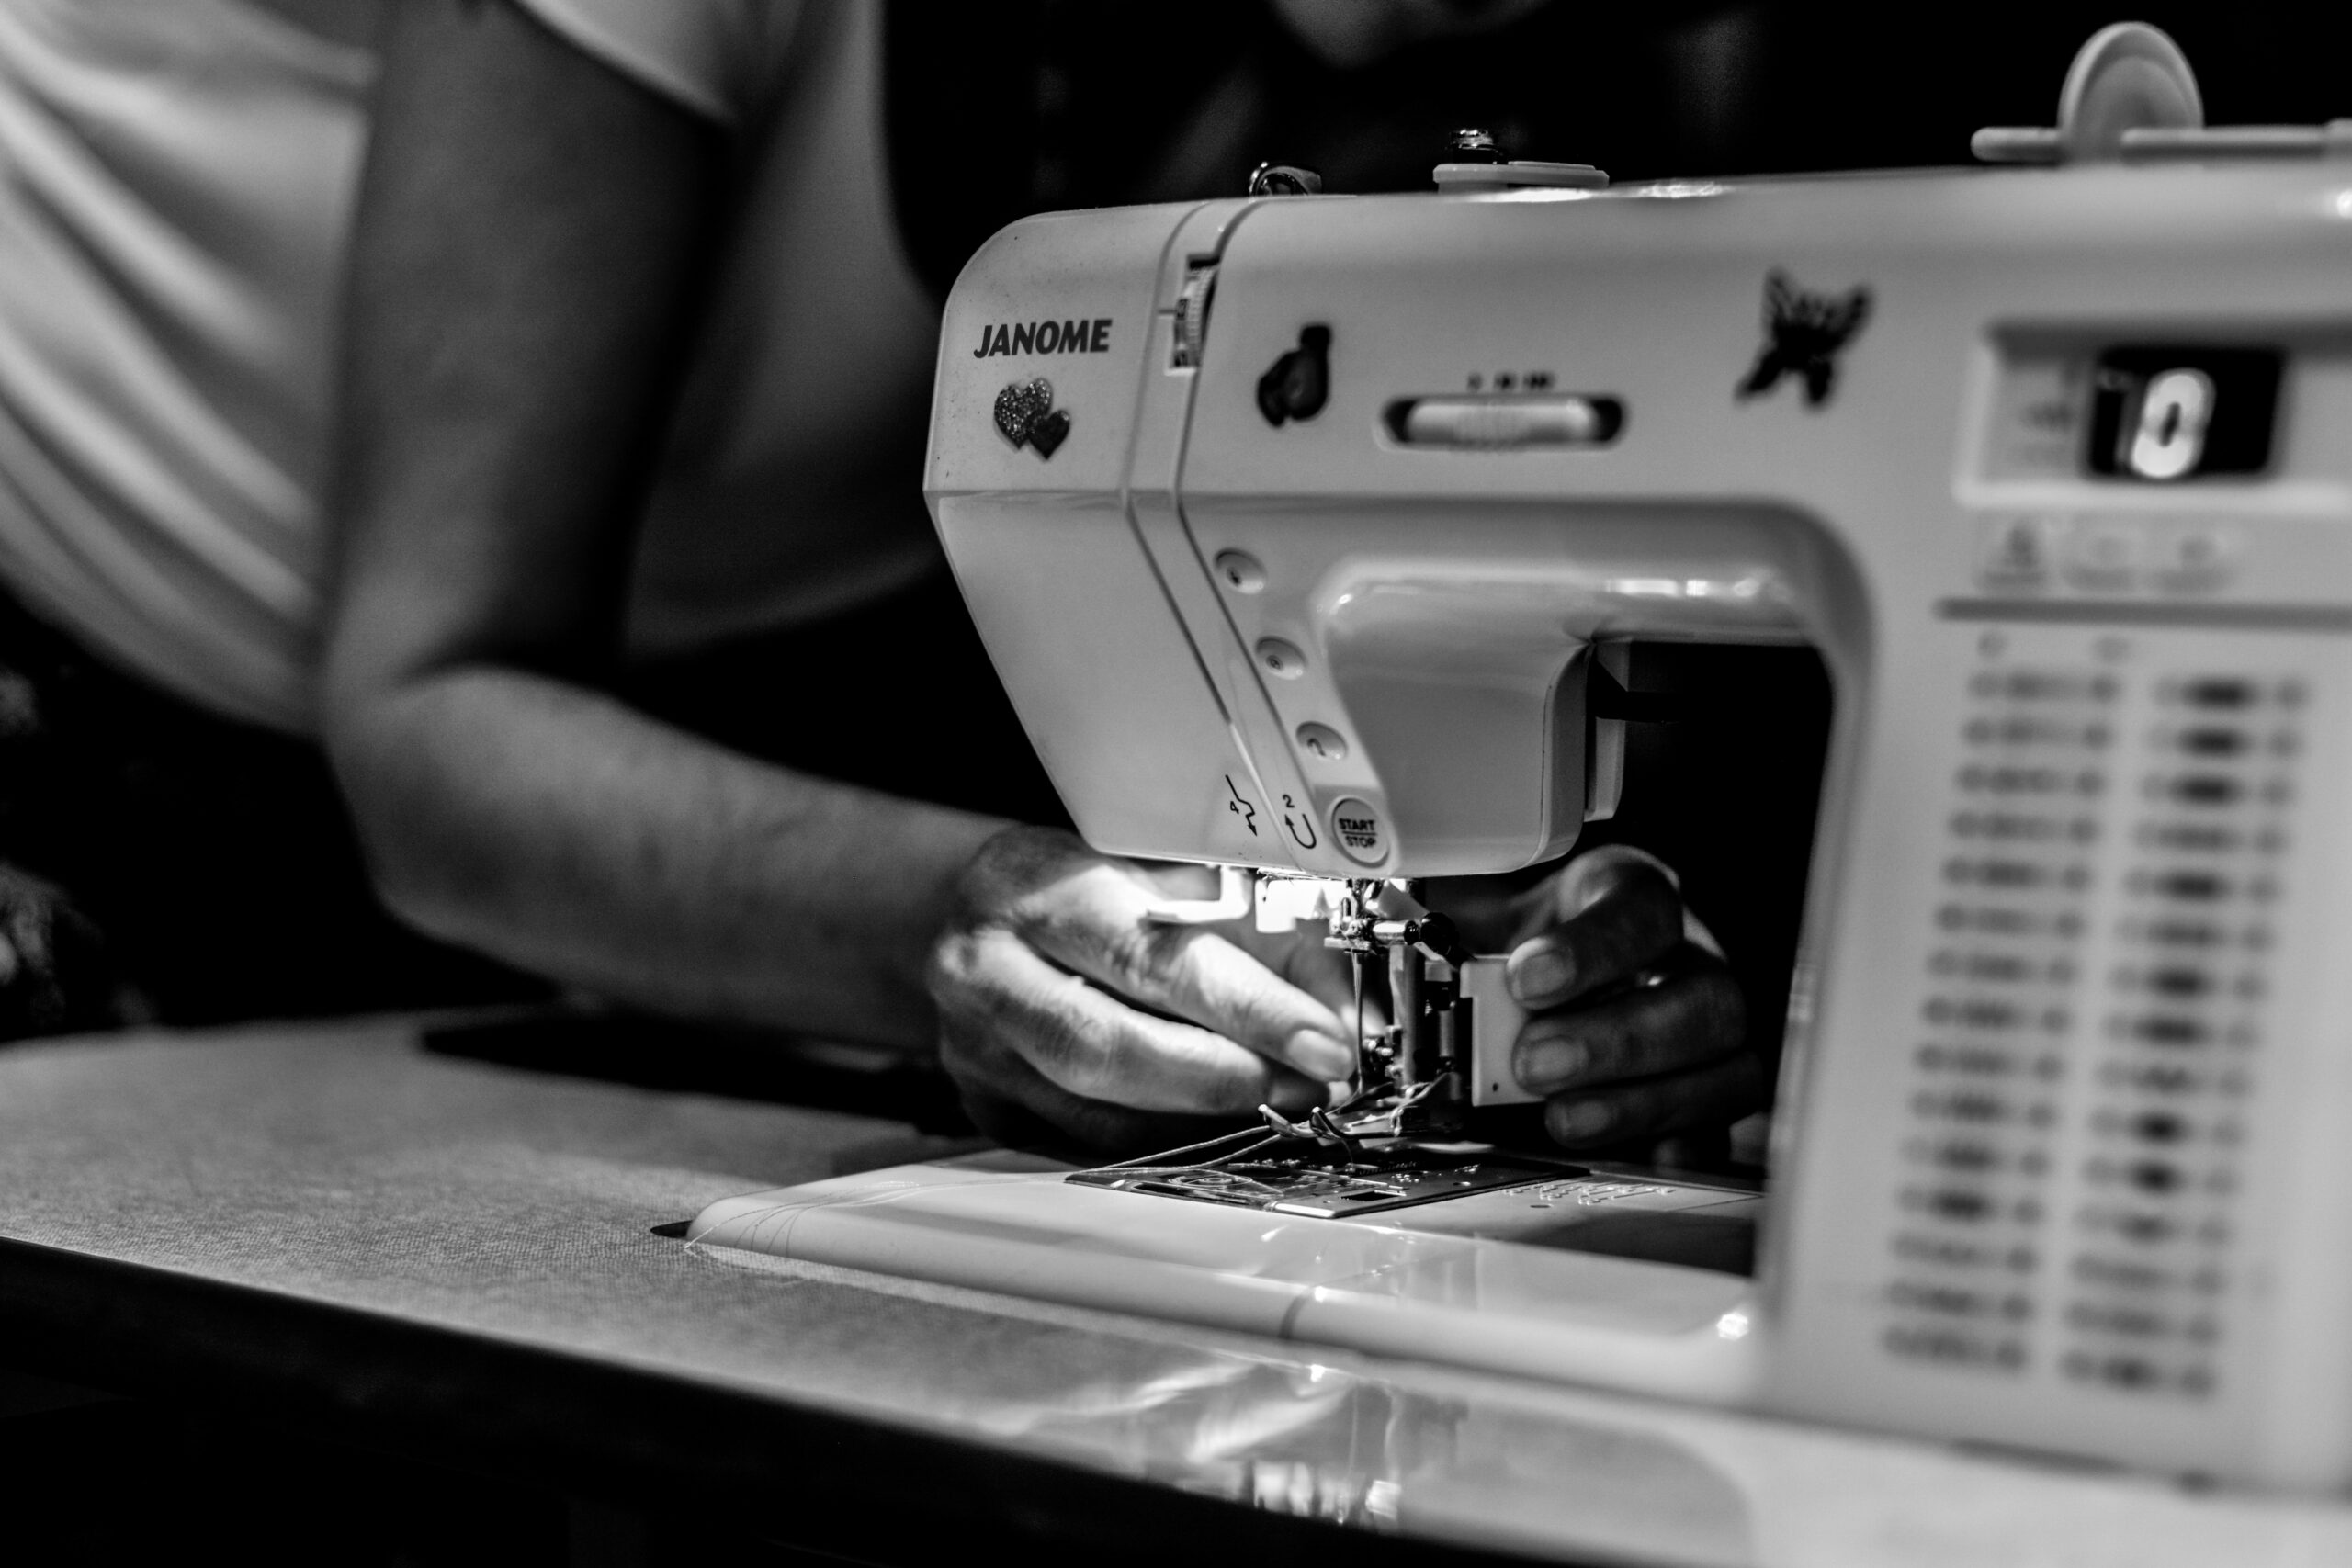 Janome-sewing-machine